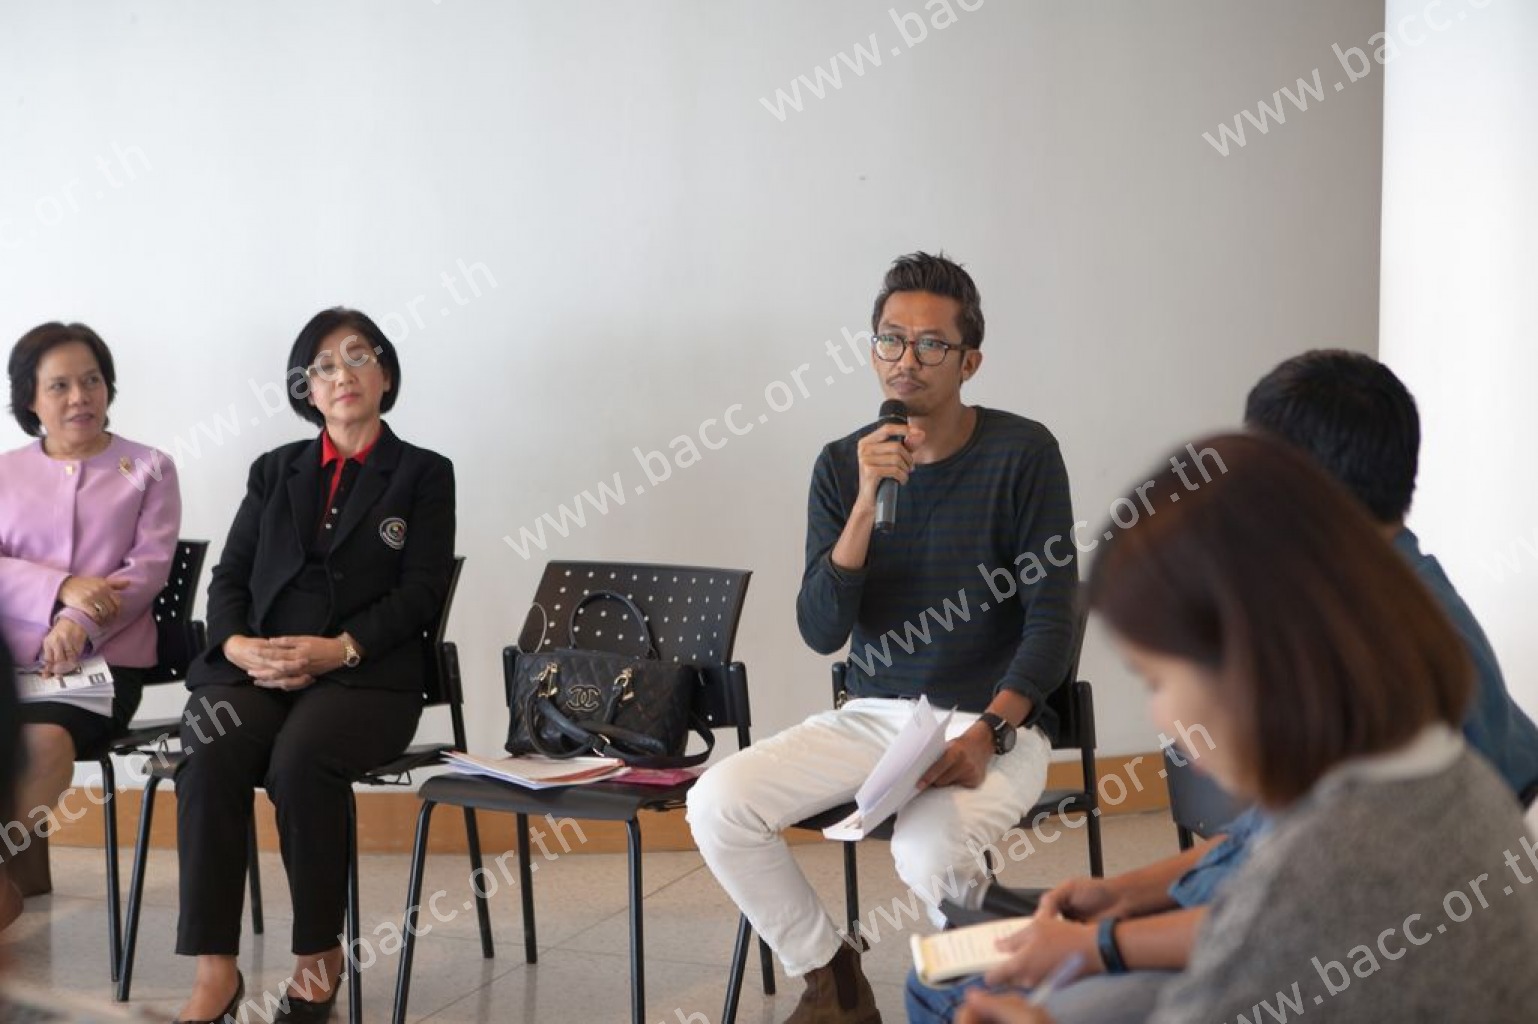 กิจกรรมการศึกษานิทรรศการ “ไทยเนตร” : Artist Forum #3 : “พื้นที่สร้างสรรค์กับงานศิลปศึกษา  Creative Space + Art Education”